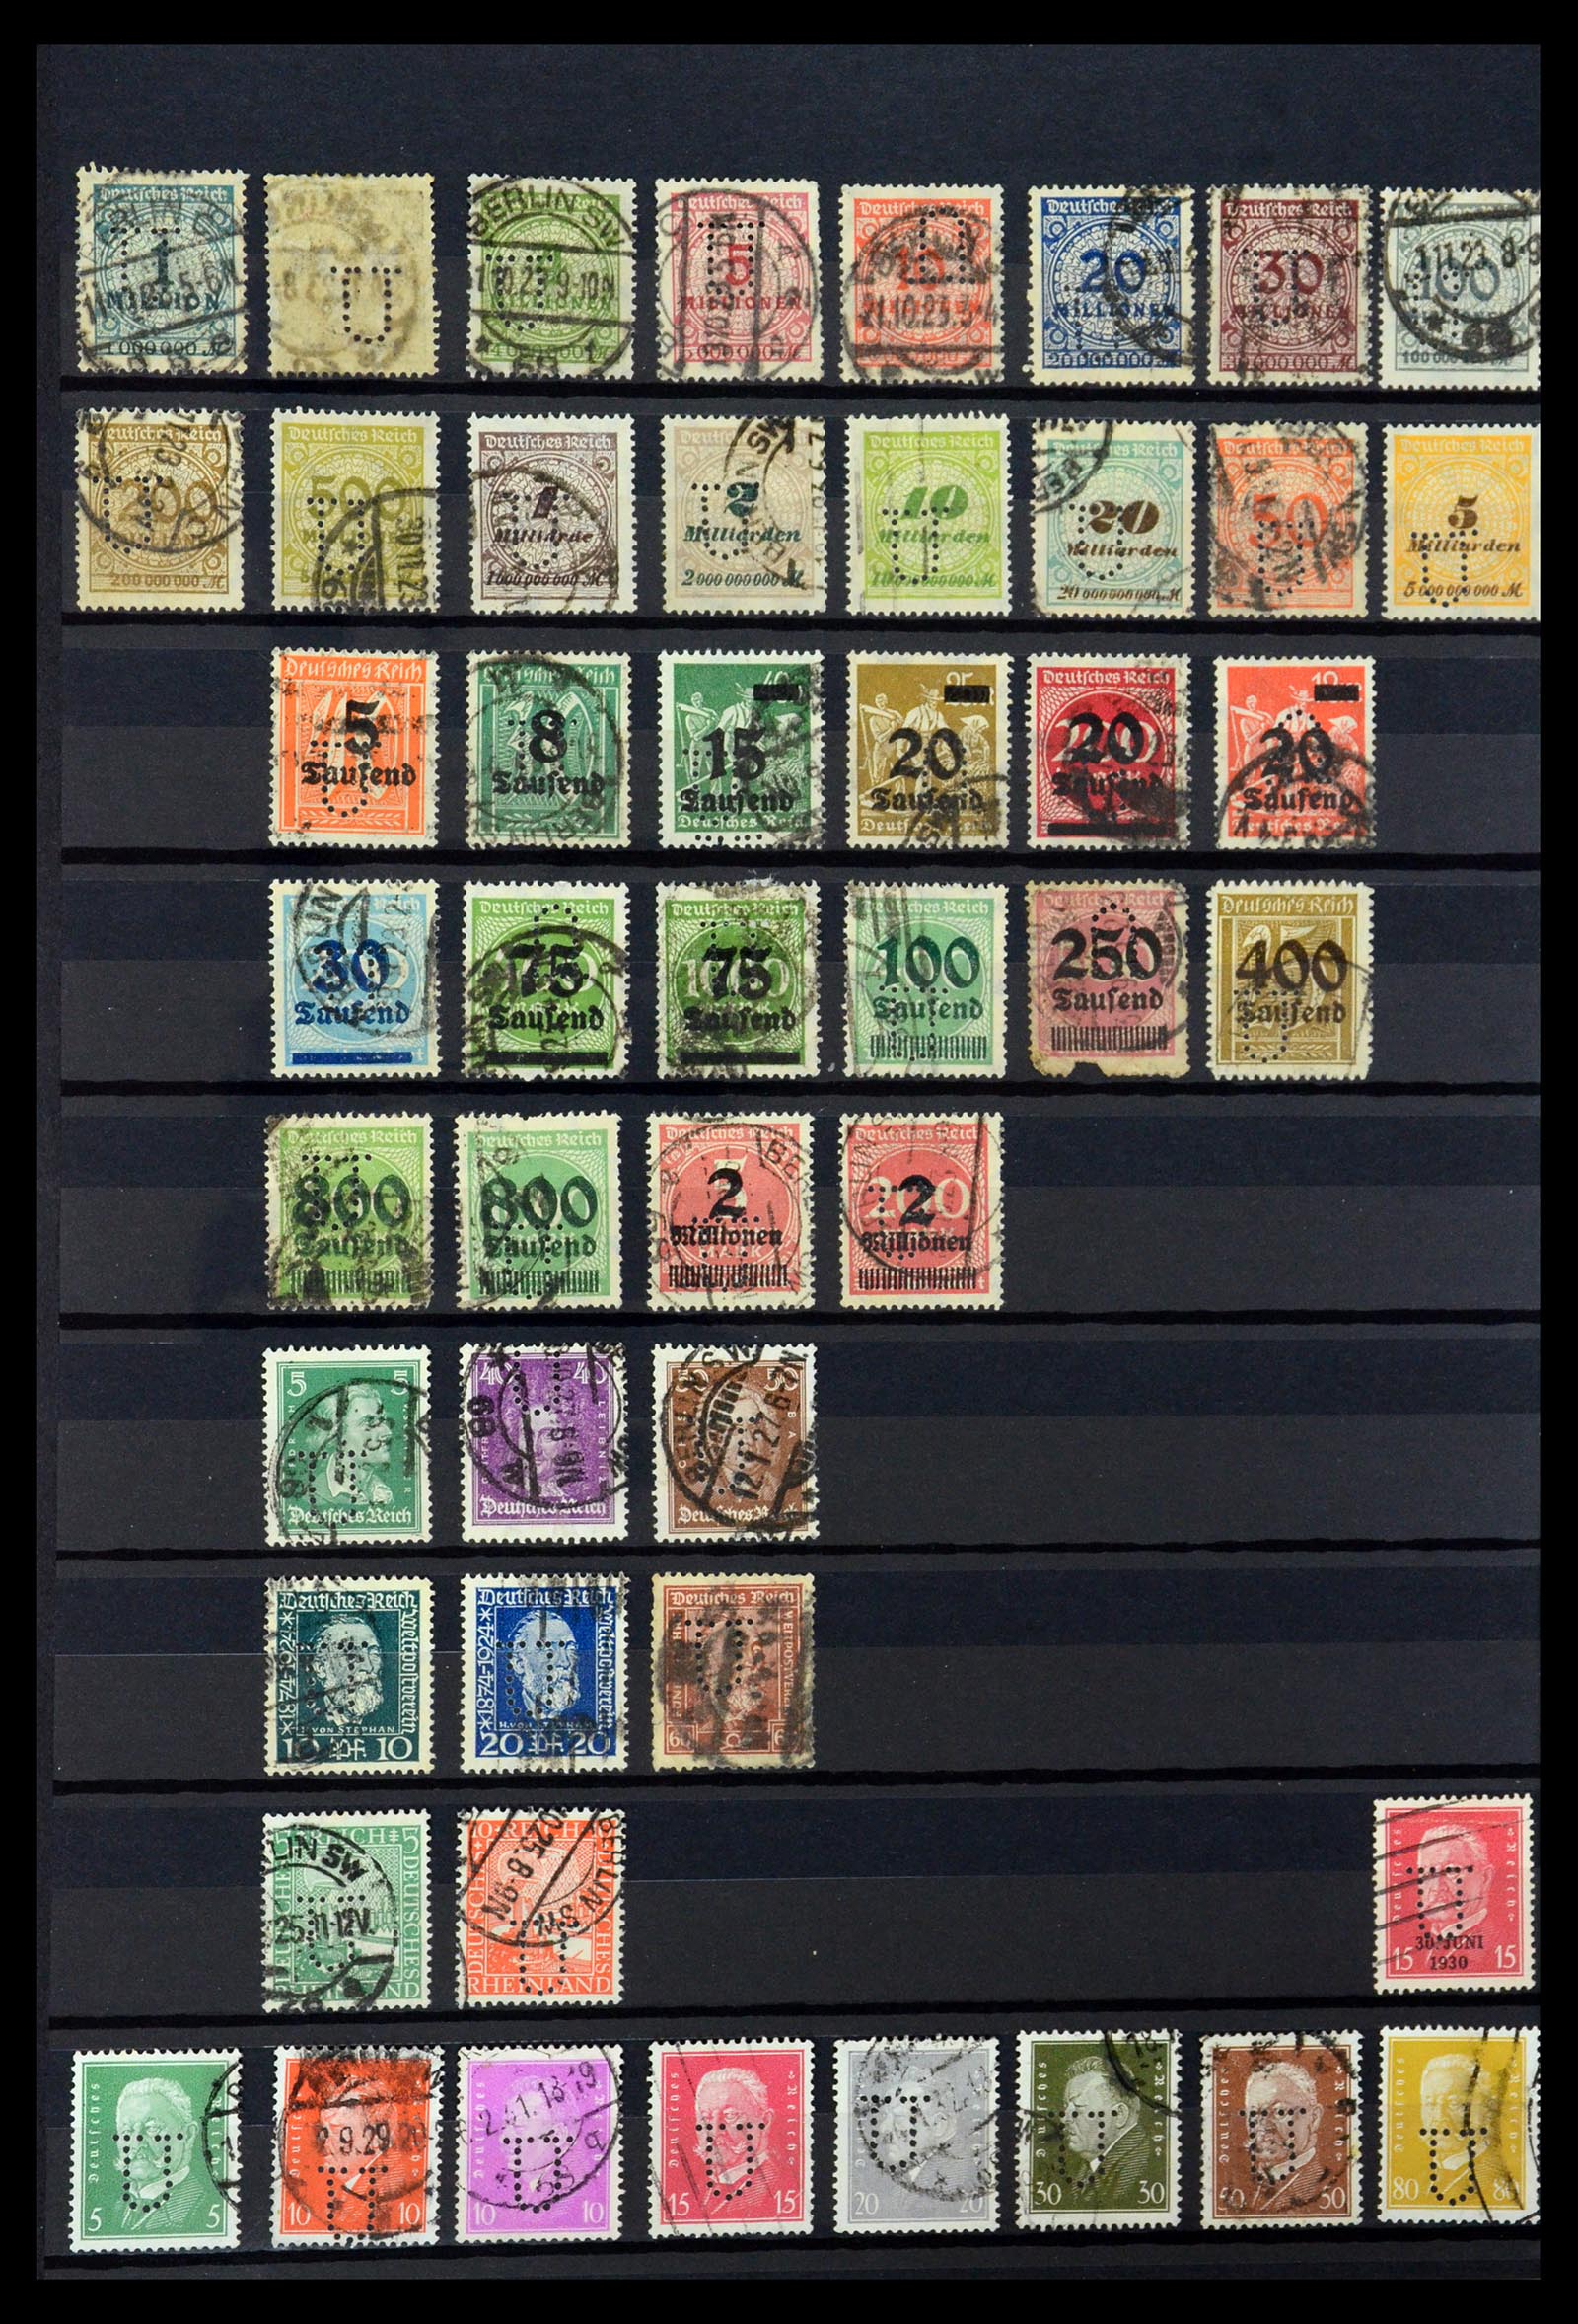 36405 319 - Stamp collection 36405 German Reich perfins 1880-1945.